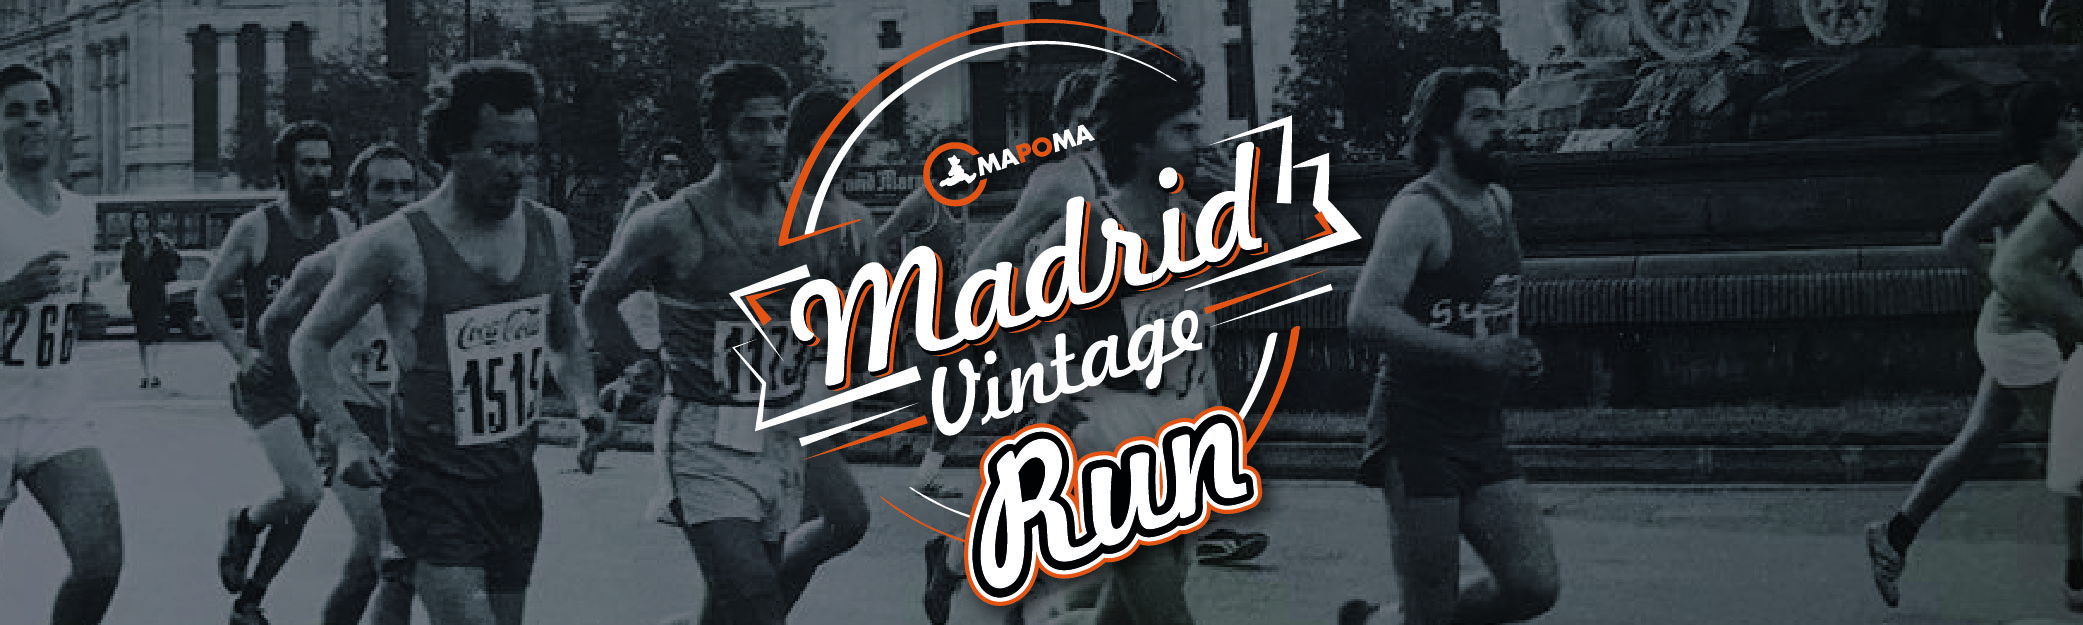 Llega la Madrid Vintage Run: ¡La carrera más retro del mundo!